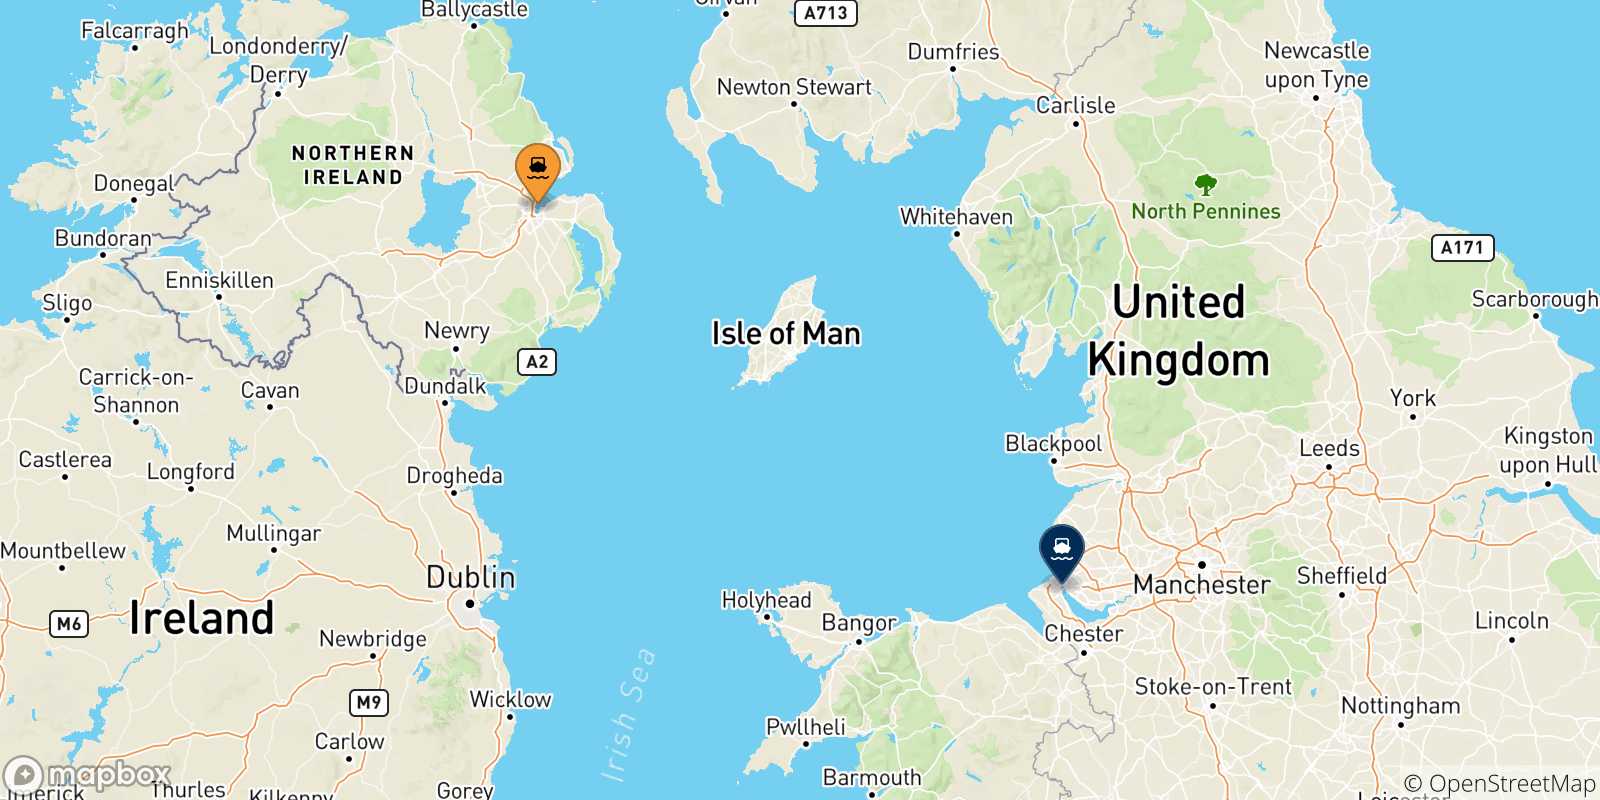 Mappa delle possibili rotte tra il Regno Unito e Liverpool Birkenhead